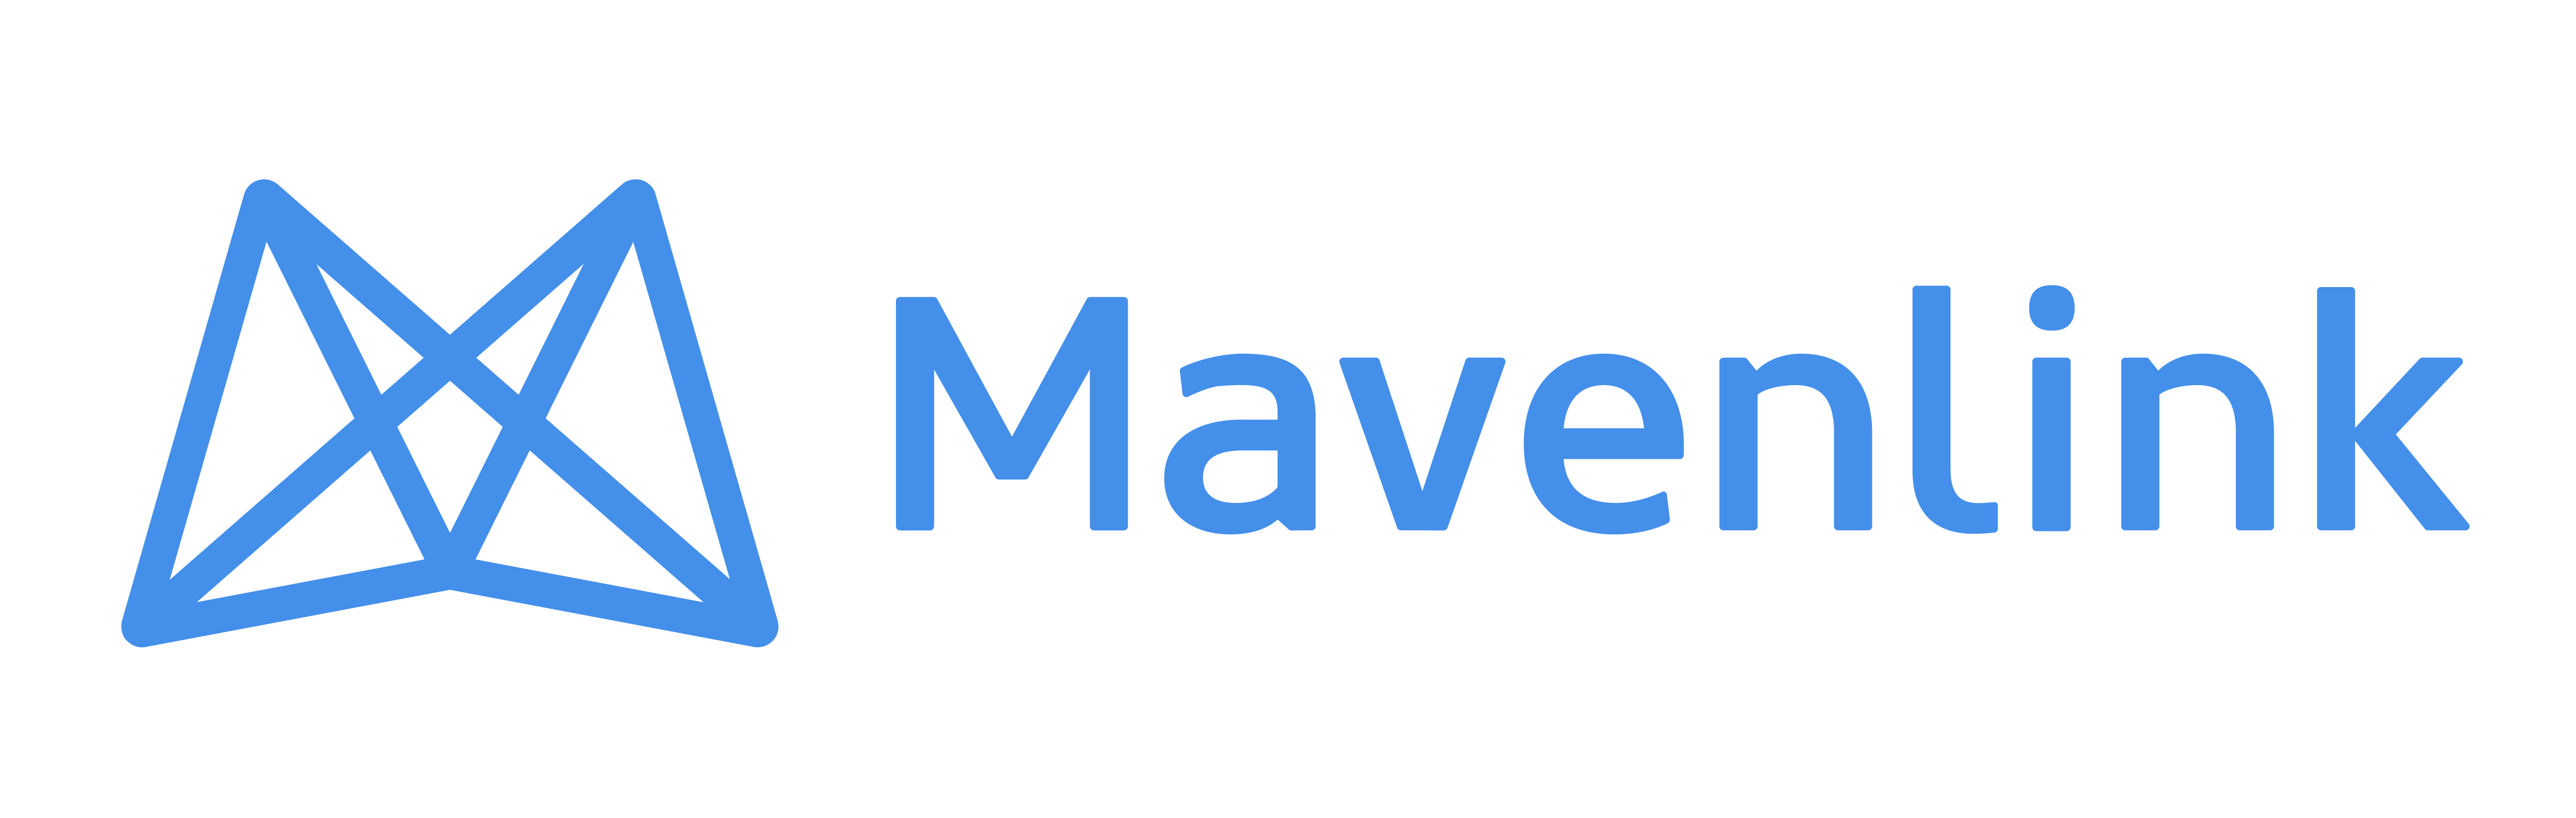 Mavenlink Logo.png